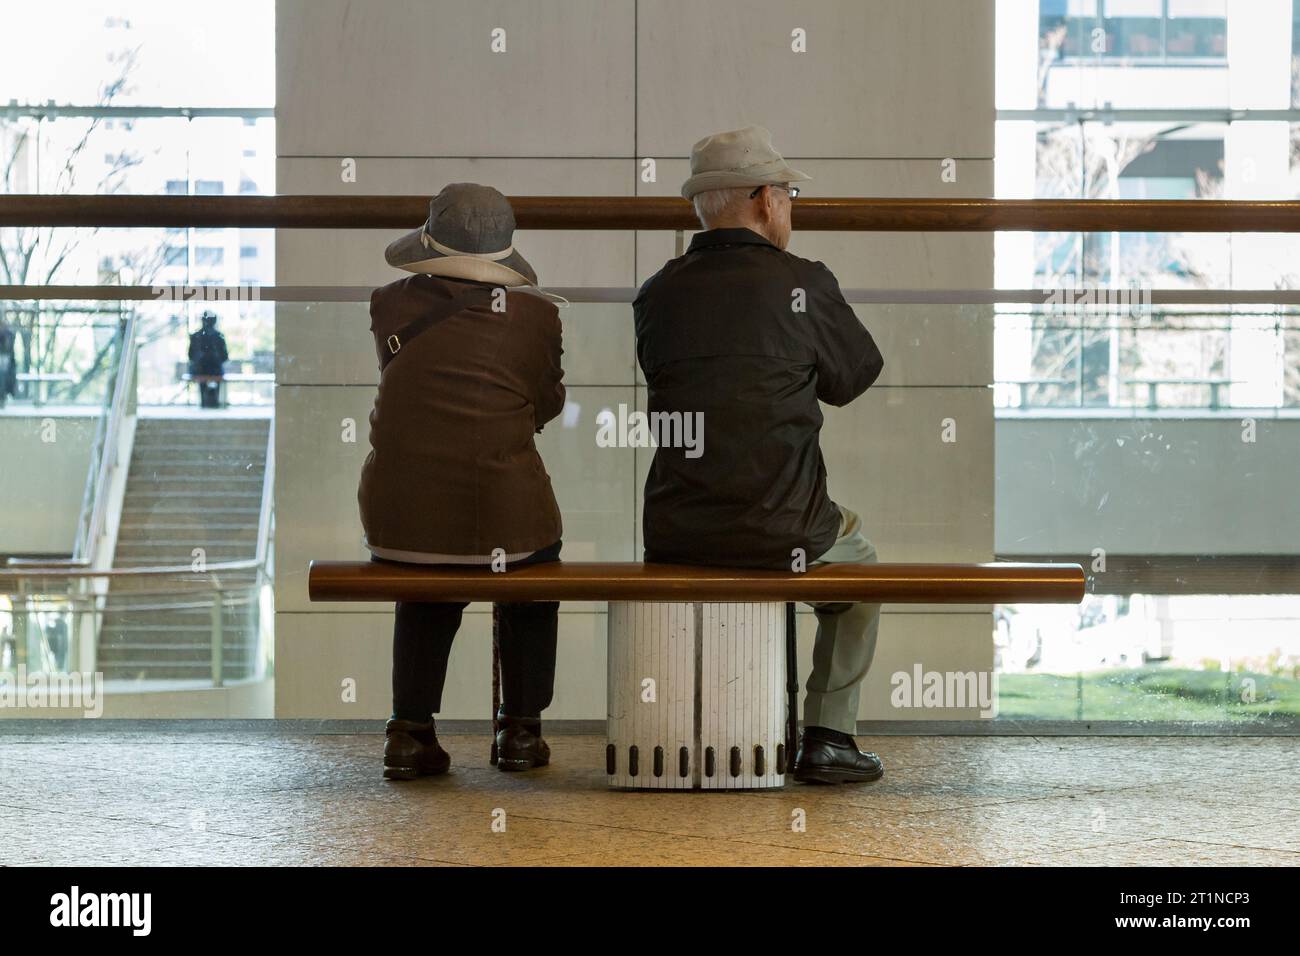 An older Japanese couple sit on a bench behind a pillar in a mall in Sakuragicho, Yokohama, Kanagawa, Japan Stock Photo